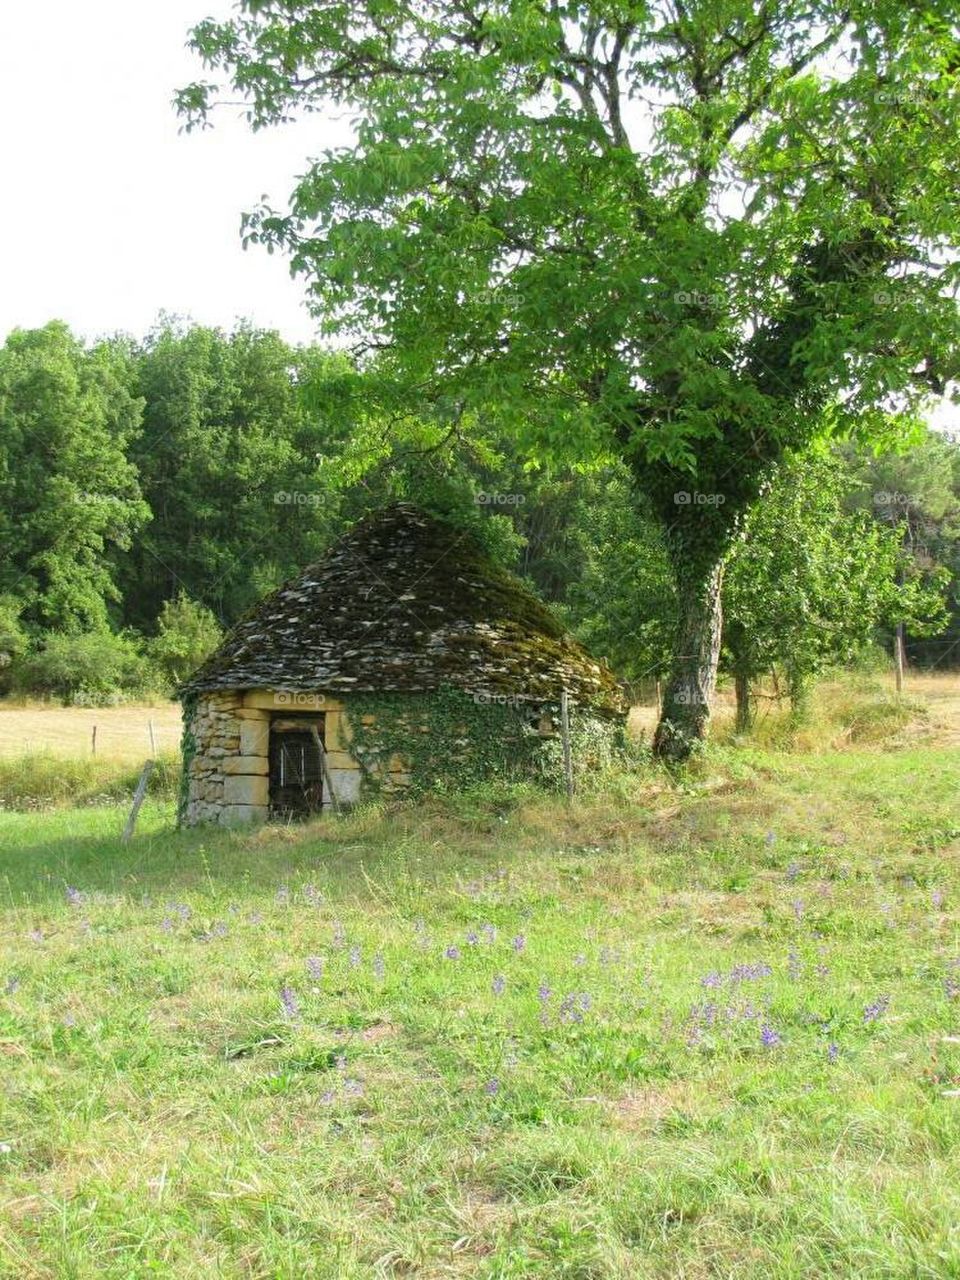 Sheep herder's hut in Dordogne